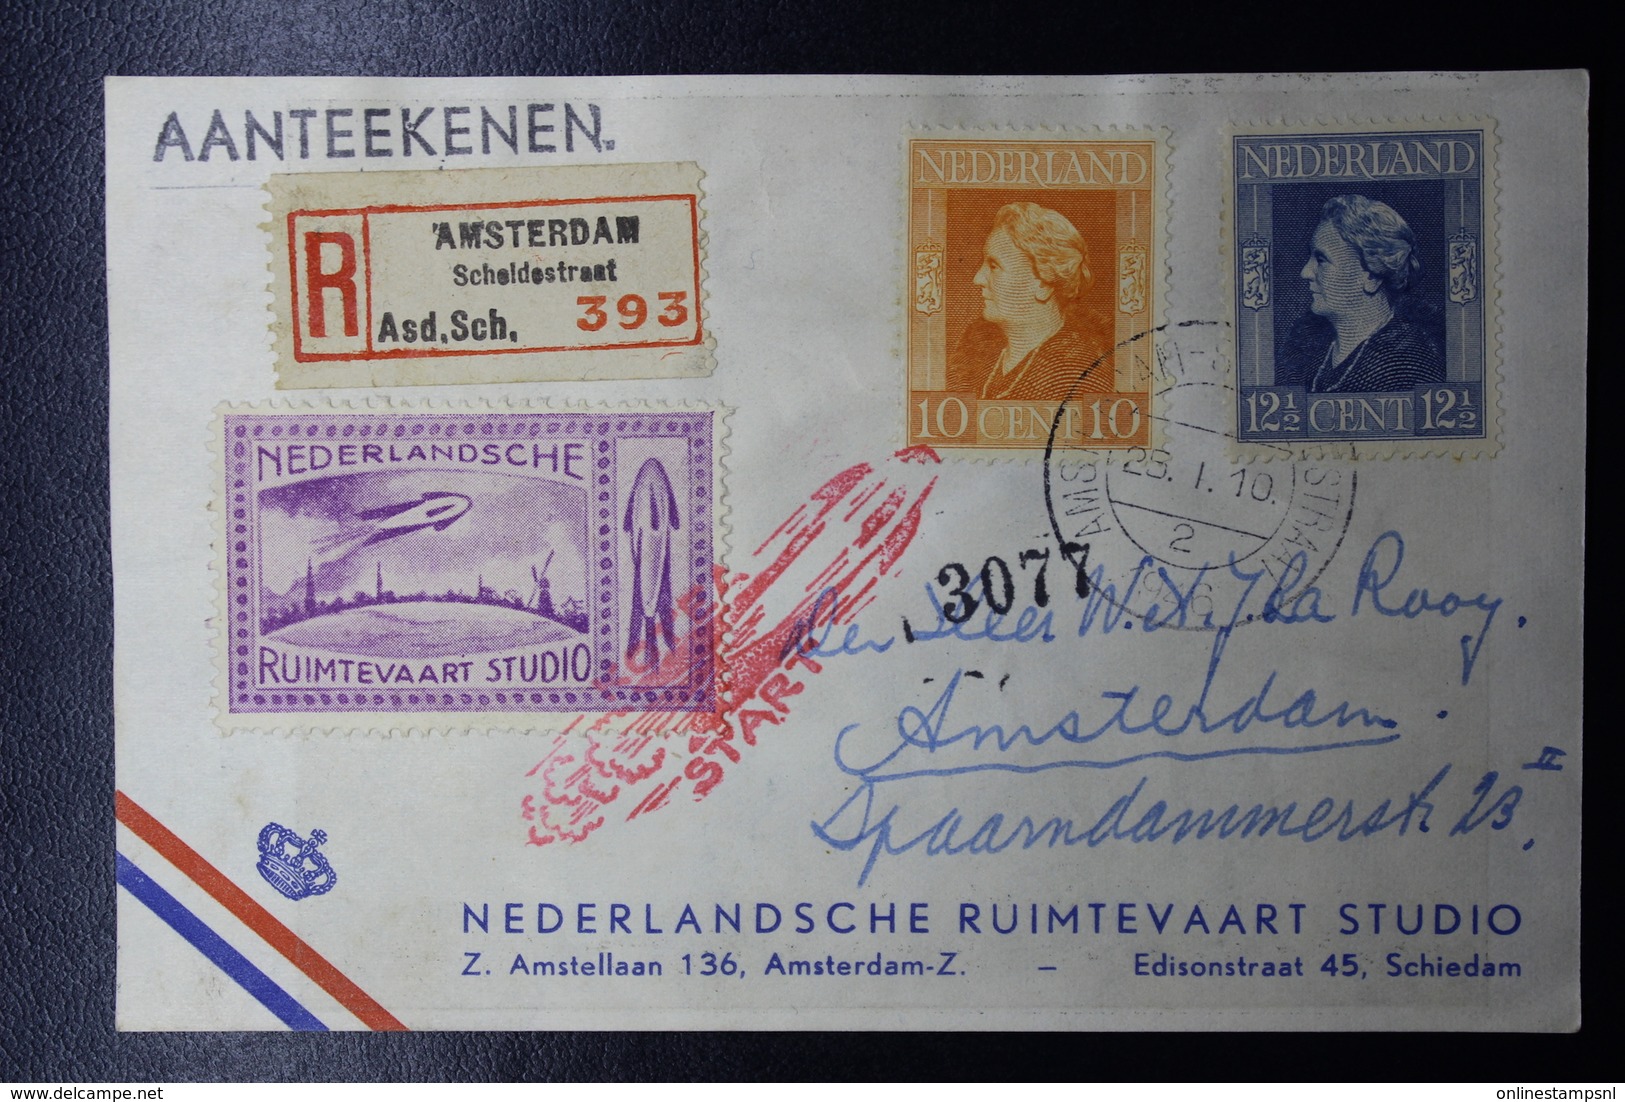 Raket Post / Rocket Mail van vlak na de oorlog, waarbij brieven kaarten en labels